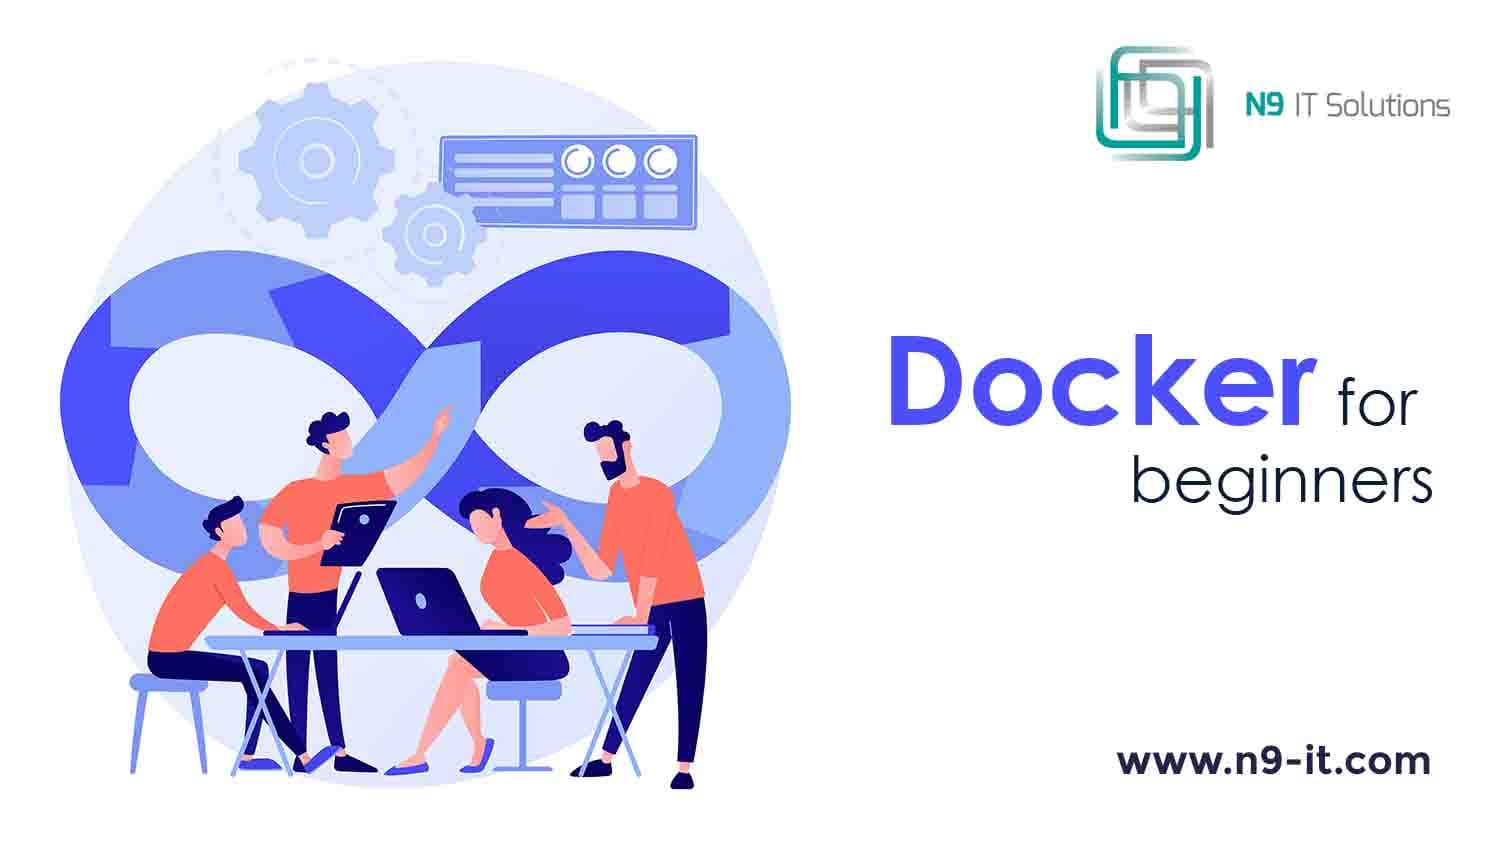 Docker for beginners